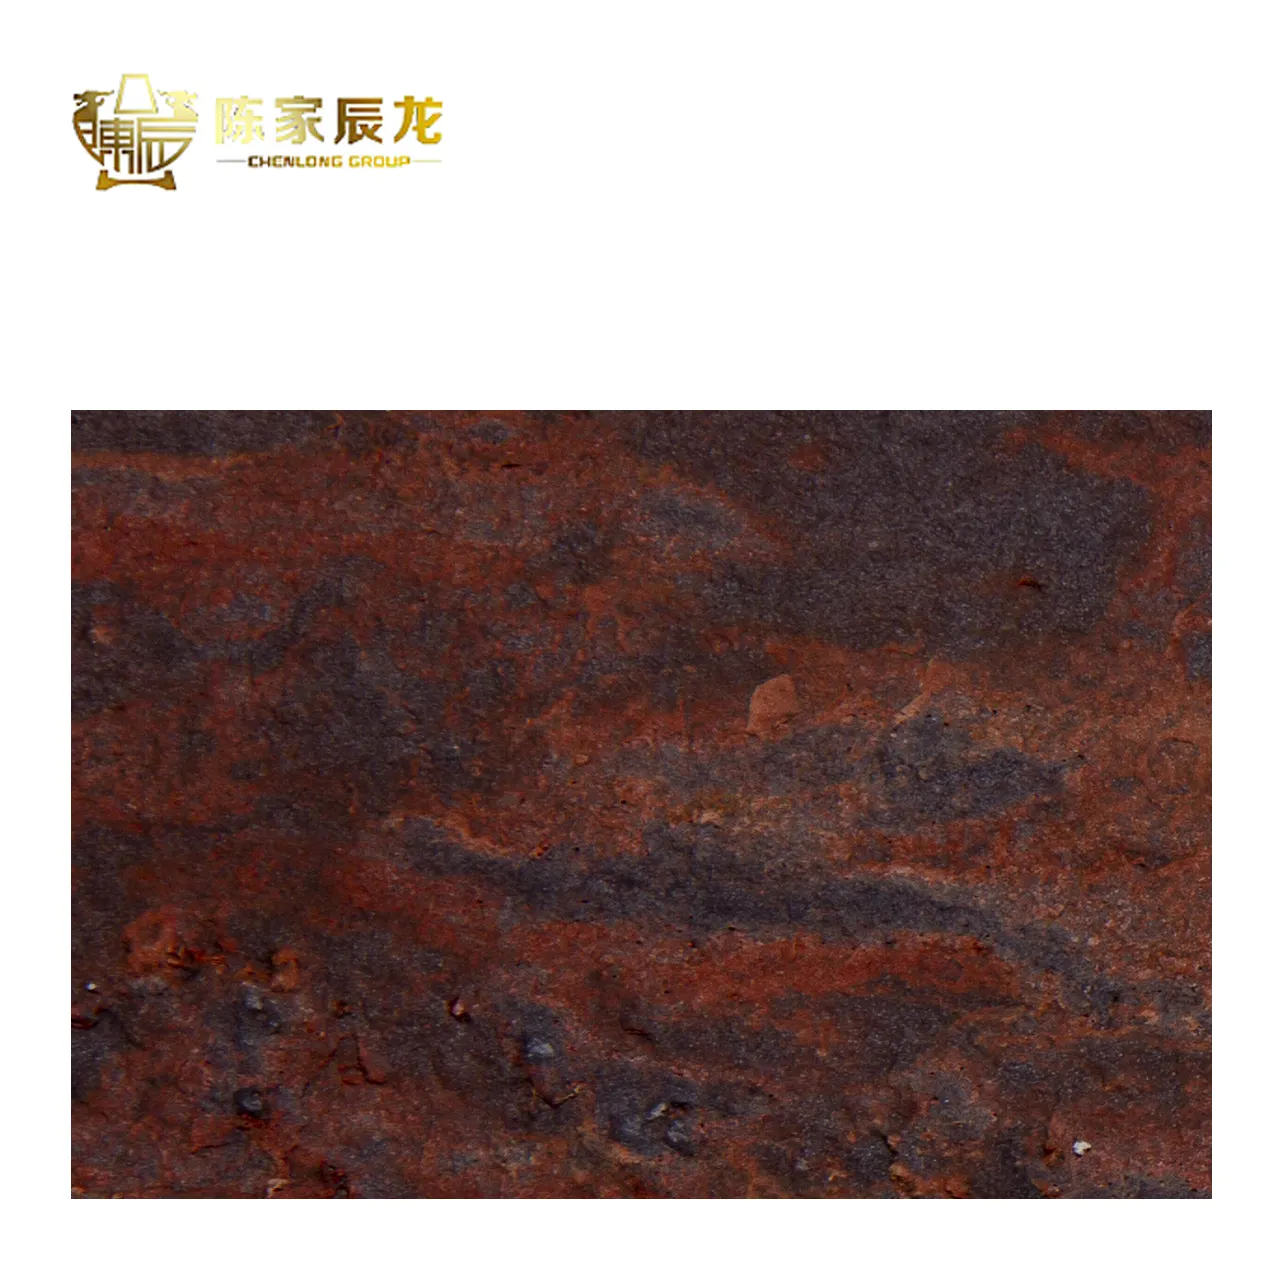 Китайский производитель, новый продукт, прочная текстура сланца, гибкая плитка из культурного камня, мягкая плитка для внутренней и внешней стены или cei